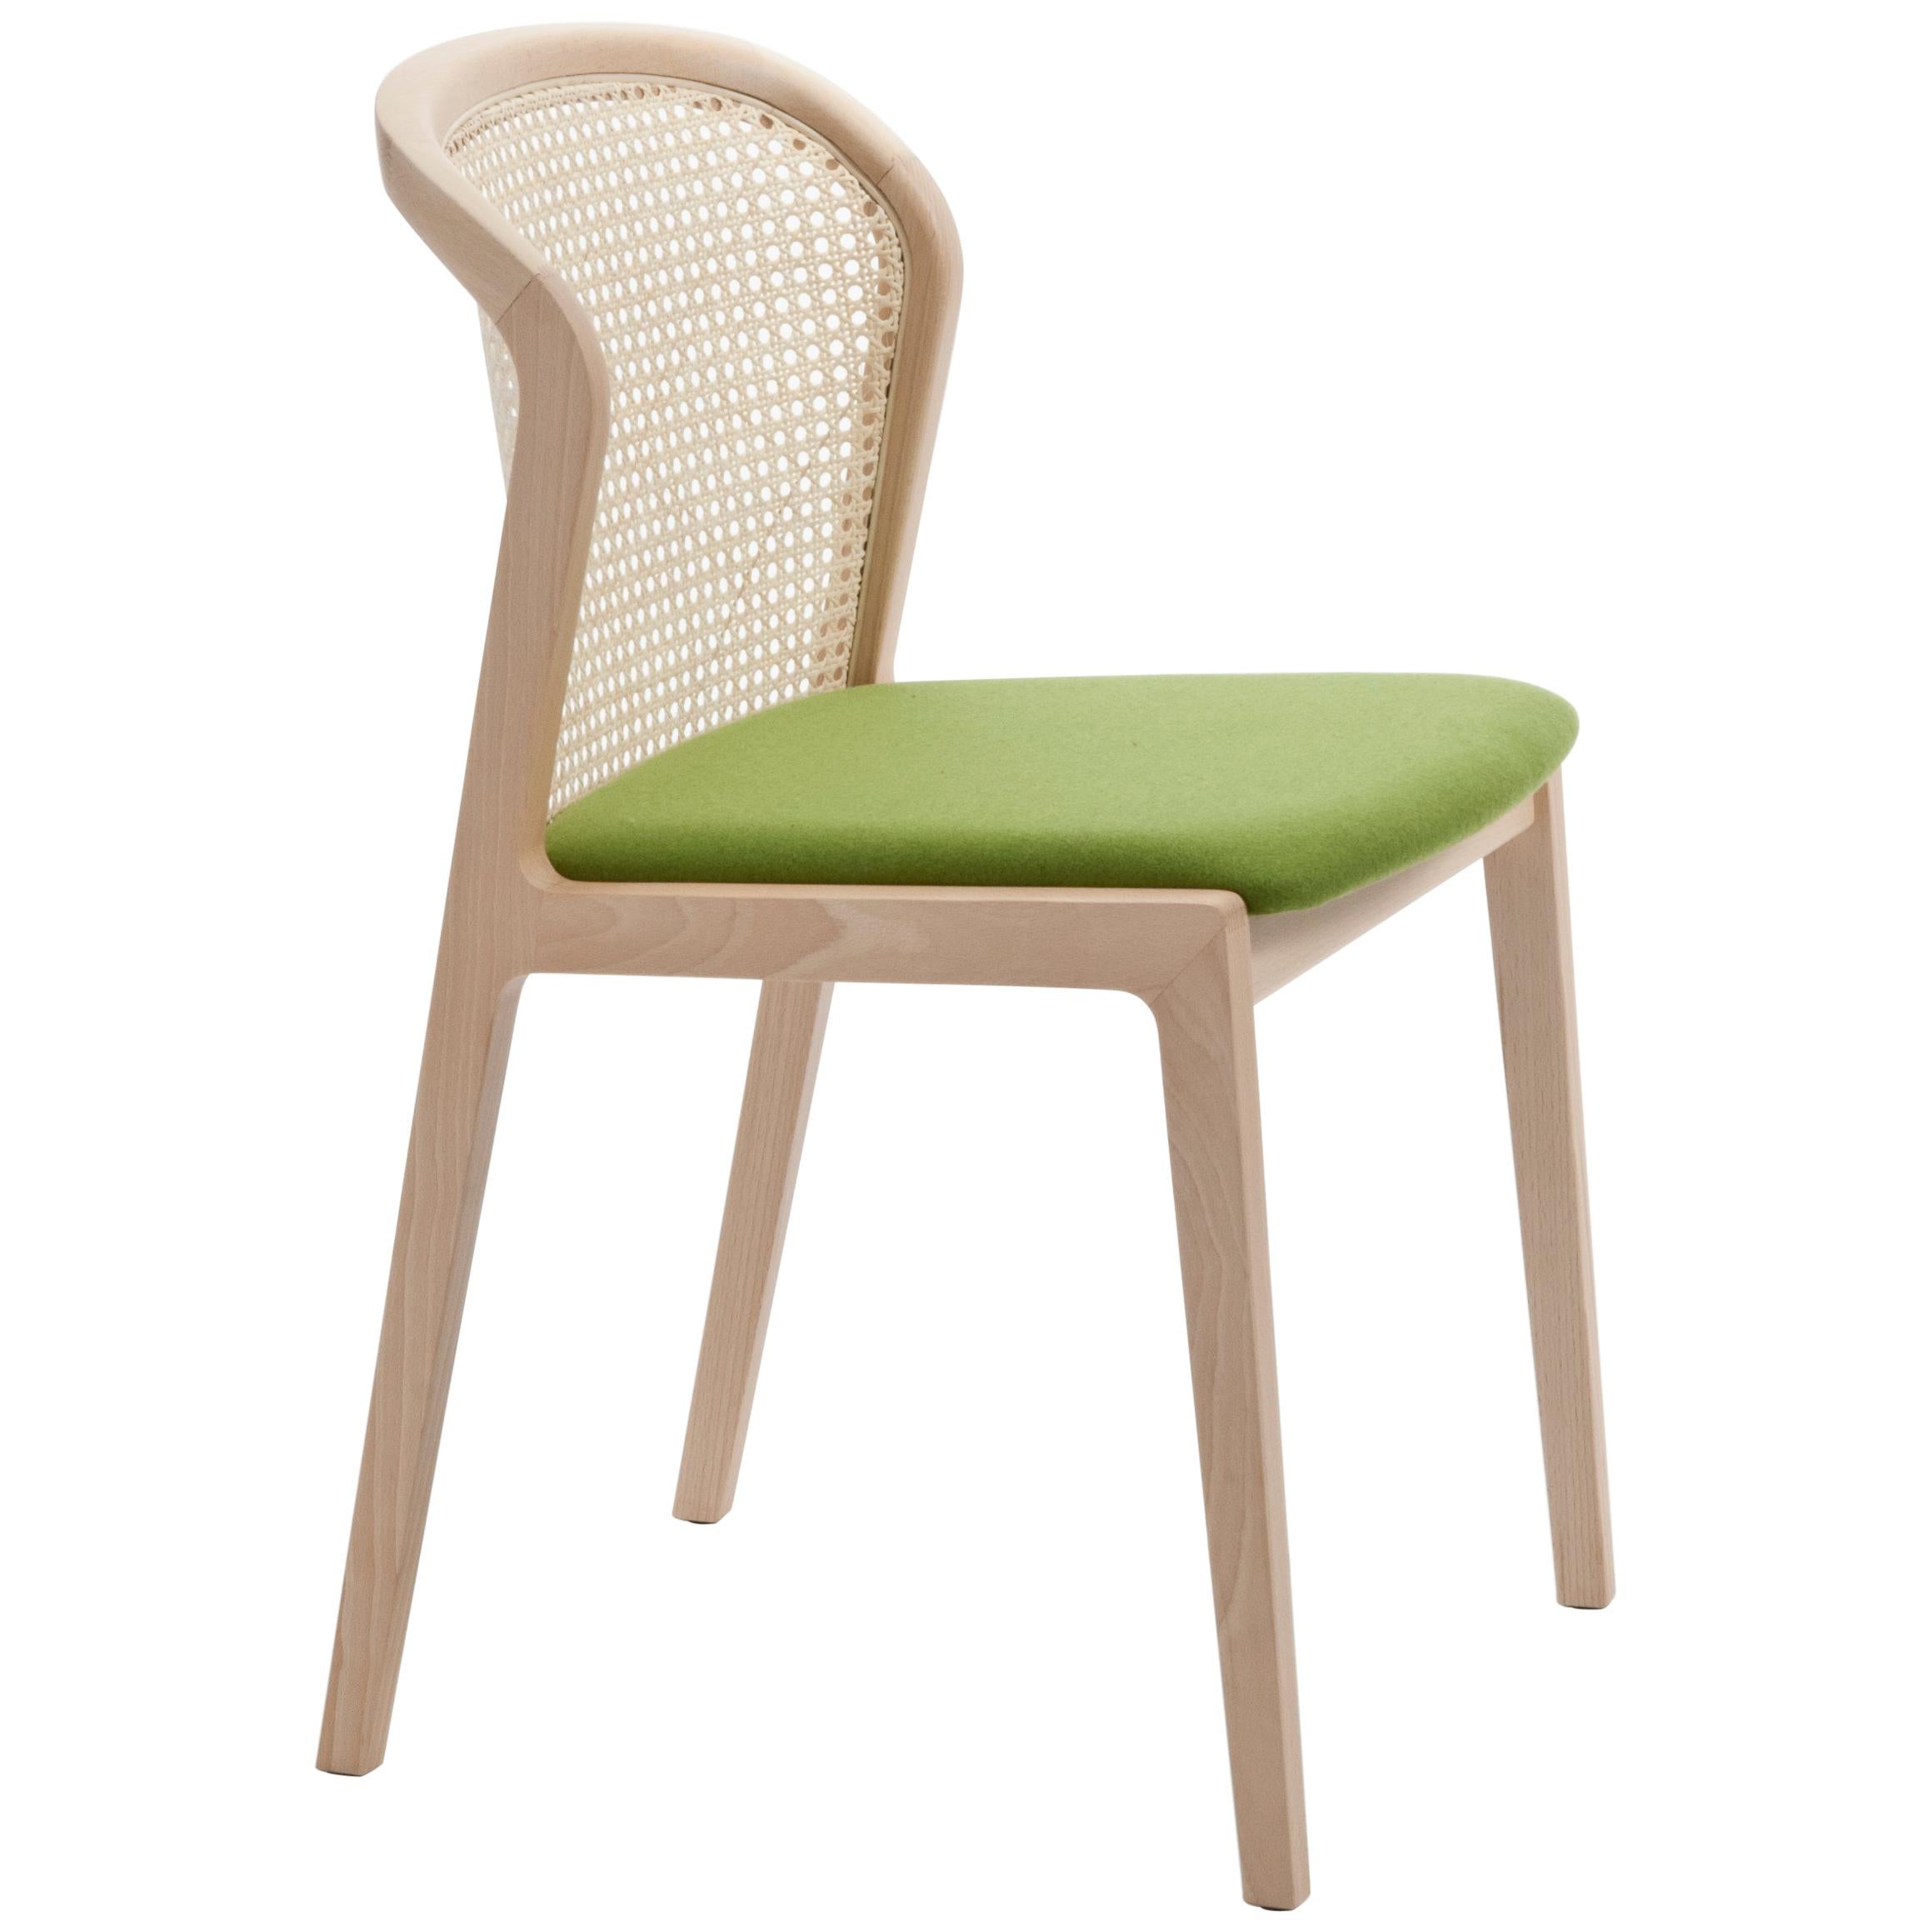 Chaise Vienna de Col, design moderne en bois et paille, assise tapissée verte